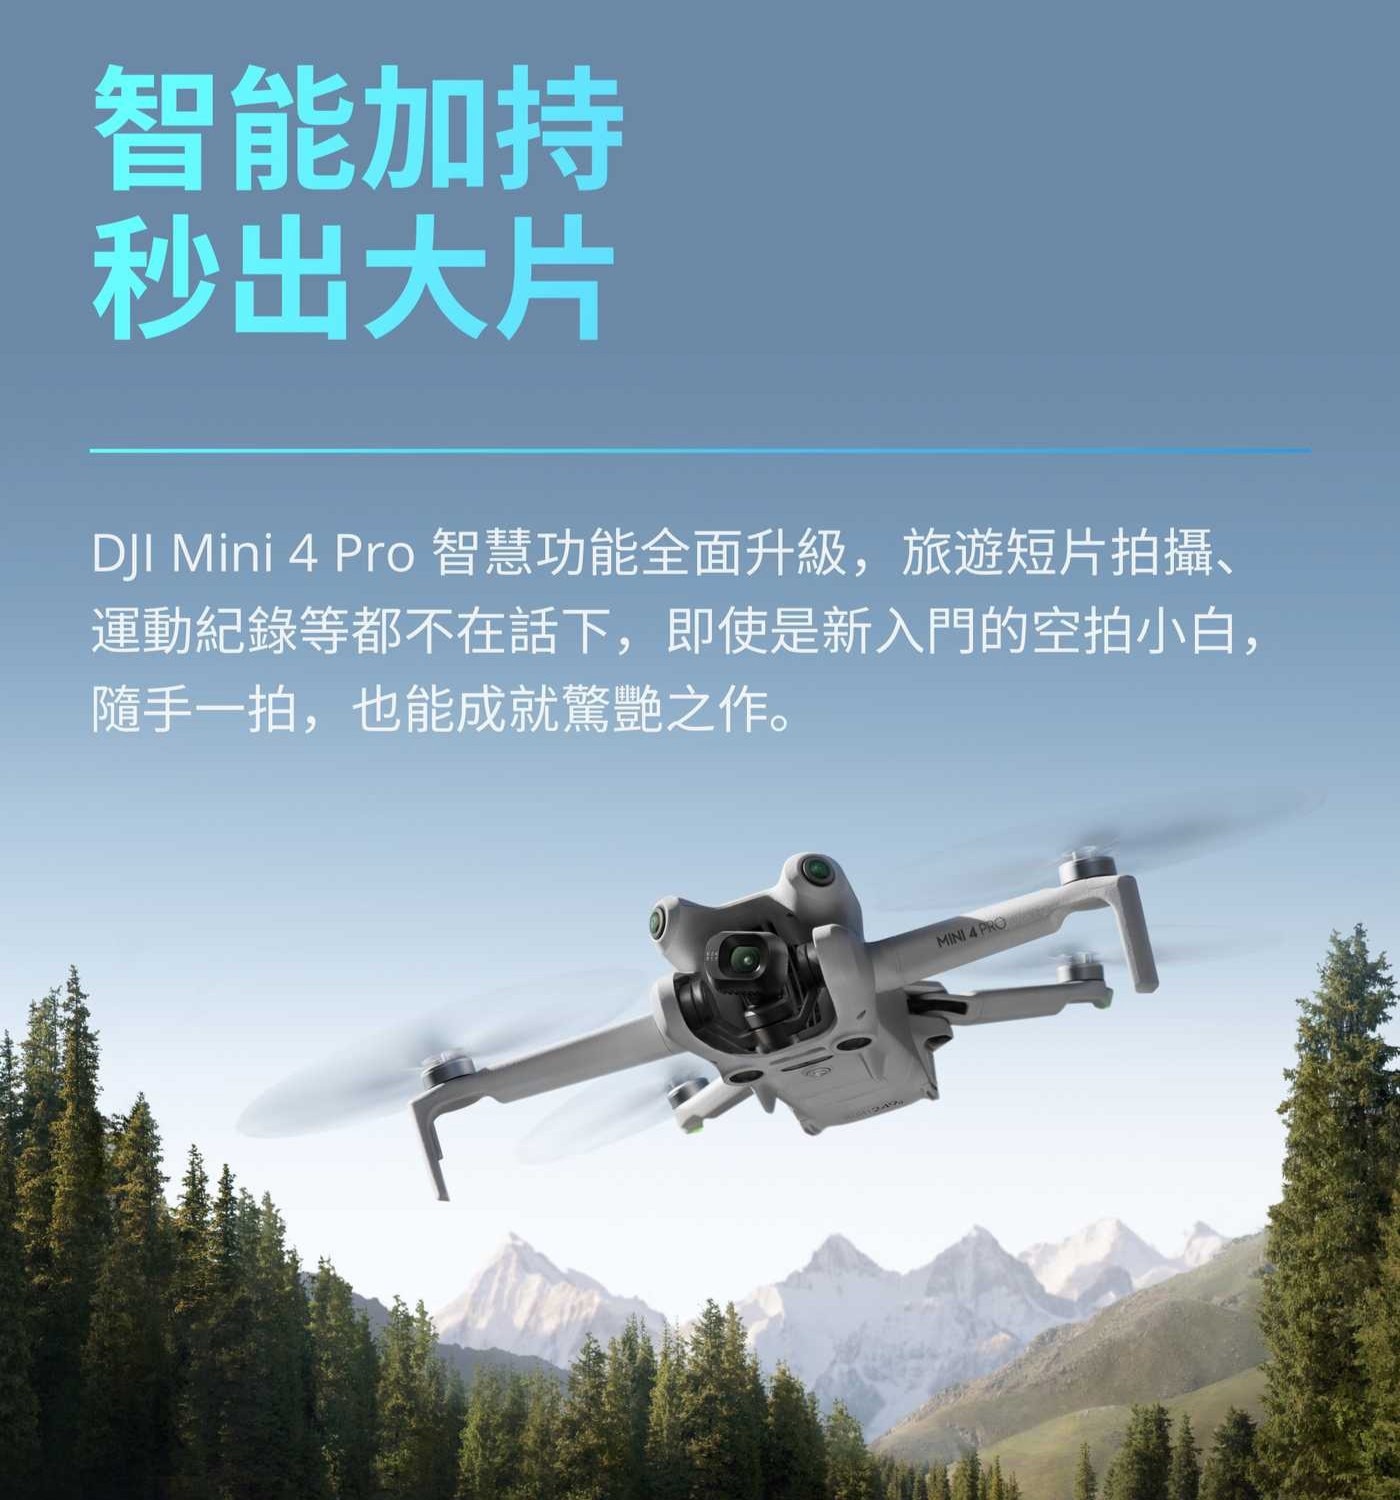 DJI Mini 4 Pro 空拍機雙電池組合，可折疊，輕巧隨身帶，全向主動避障，飛行更安全，數位變焦，智慧功能升級，秒出大片。